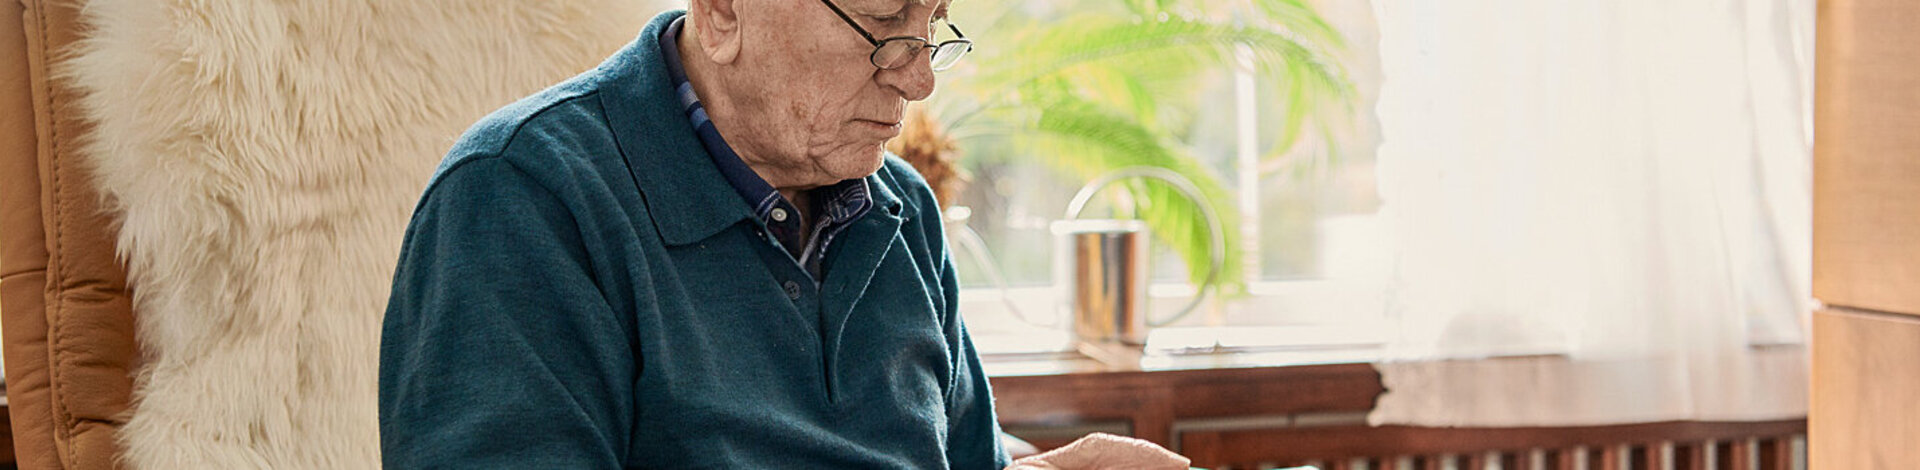 Eine ältere Person surft mit einem Tablet auf der Internetseite der AOK.